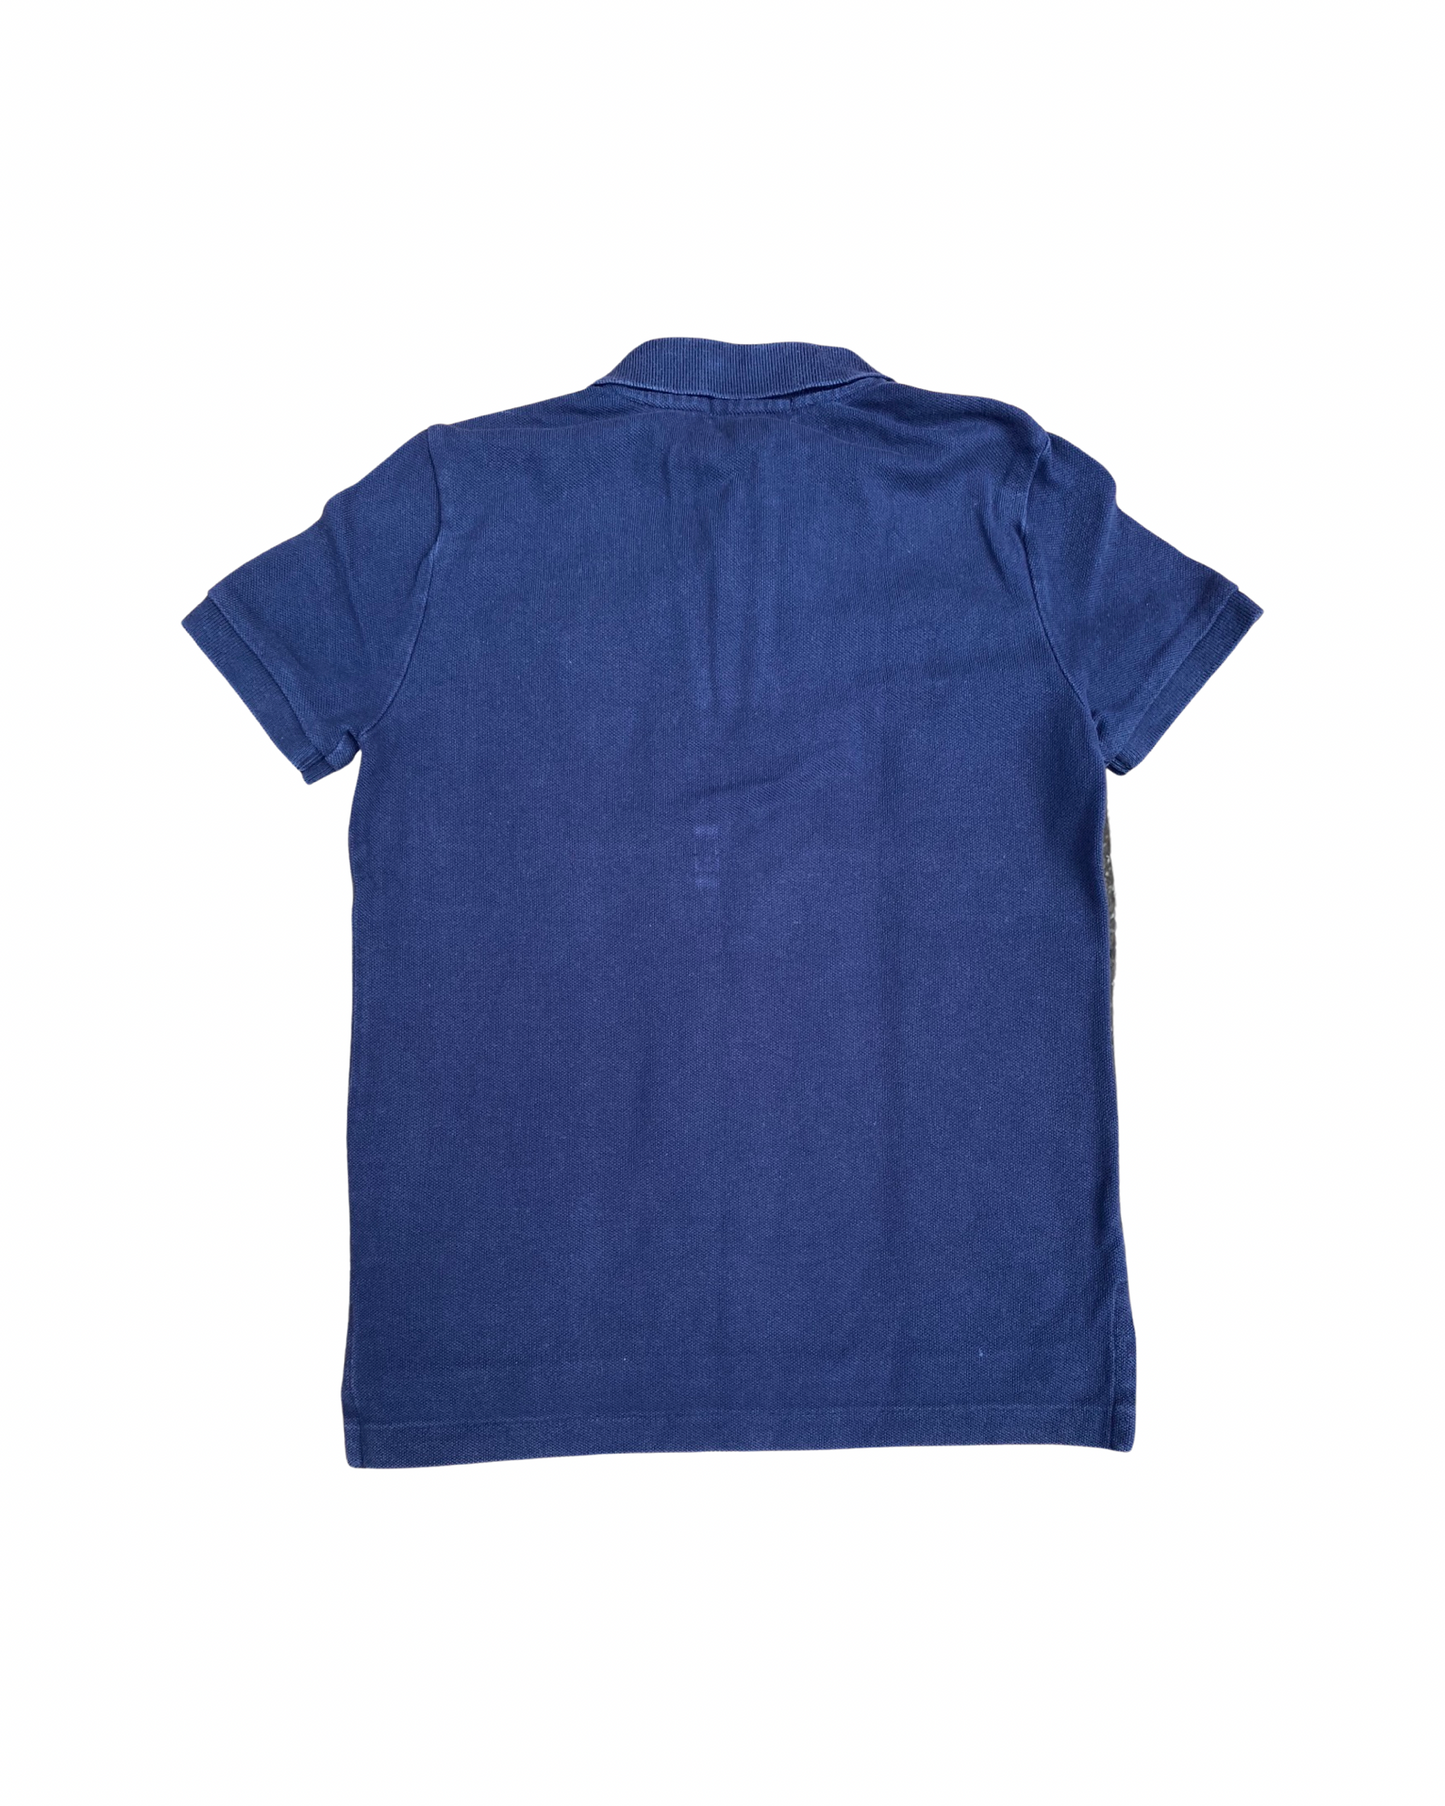 Ralph Lauren navy polo shirt (5-6yrs)